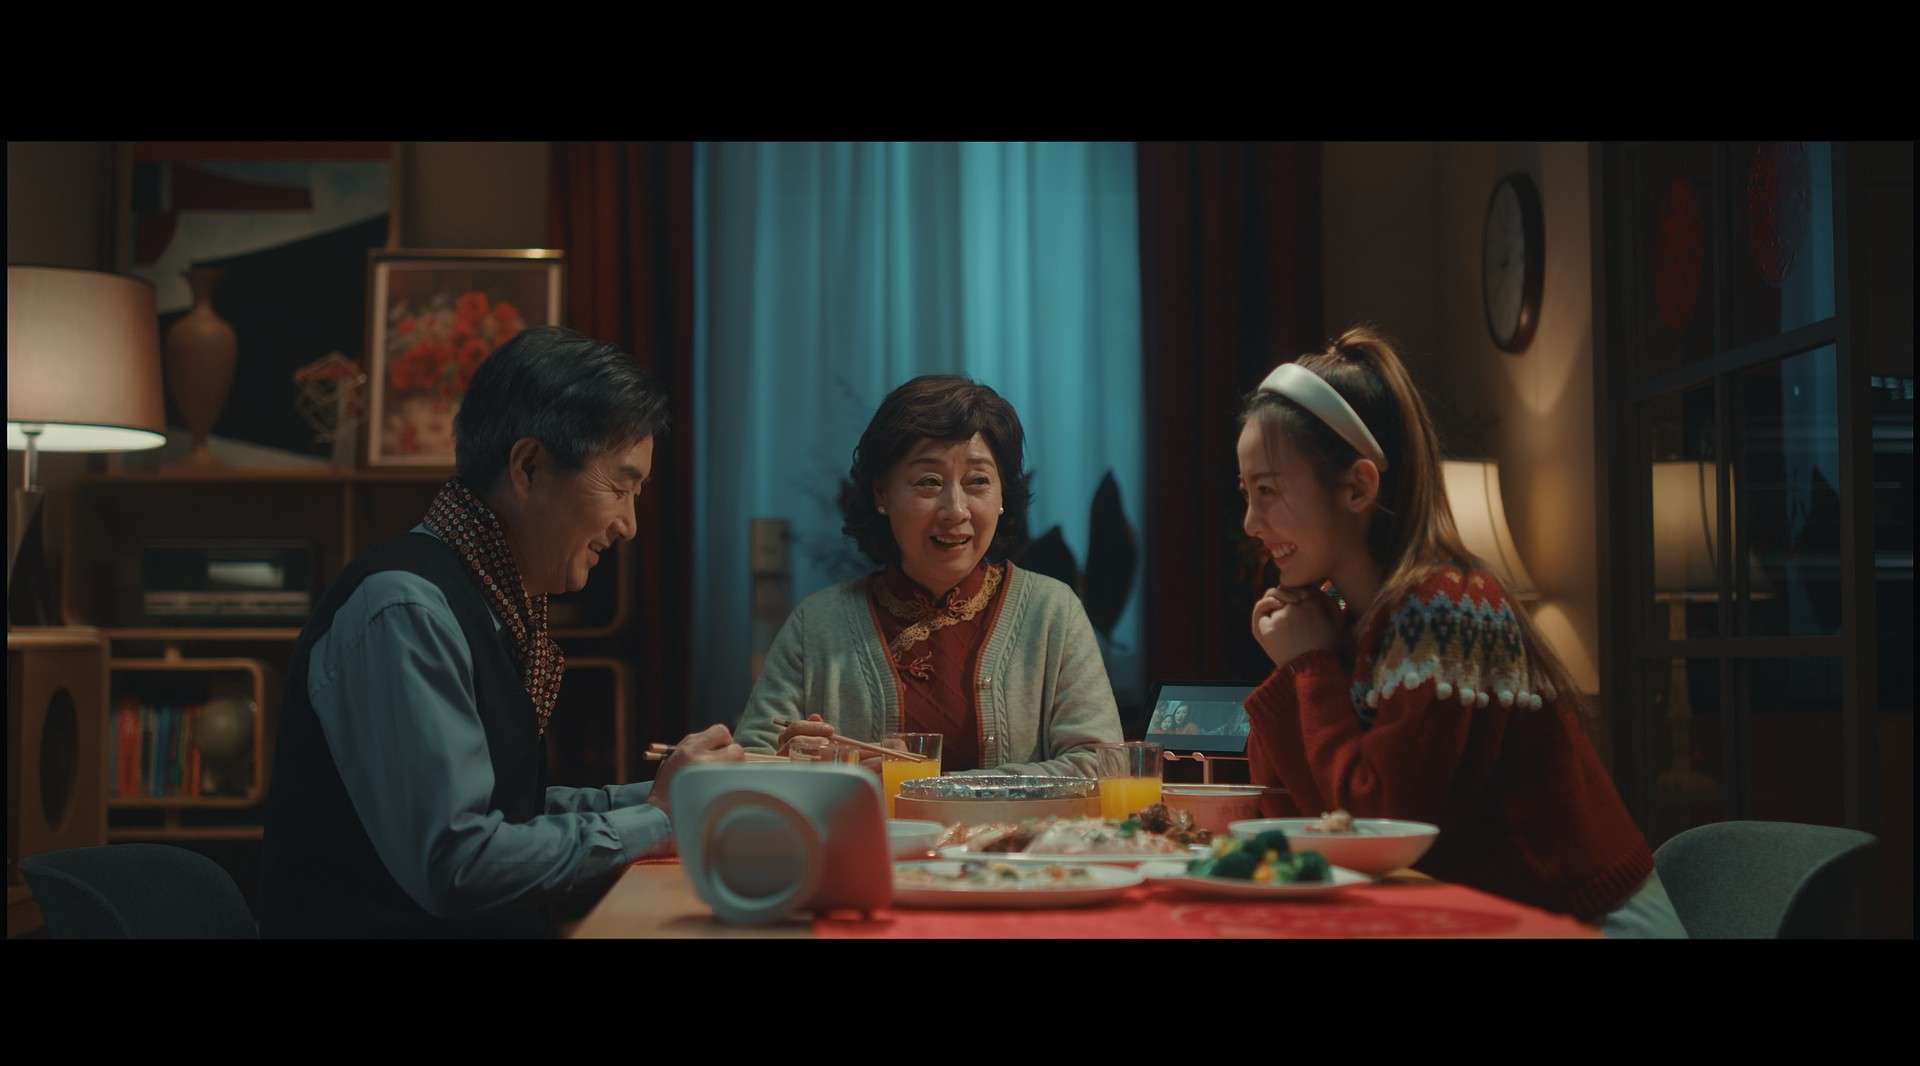 美的智慧厨电 2021 CNY 春节微电影《我家上新了》完整版